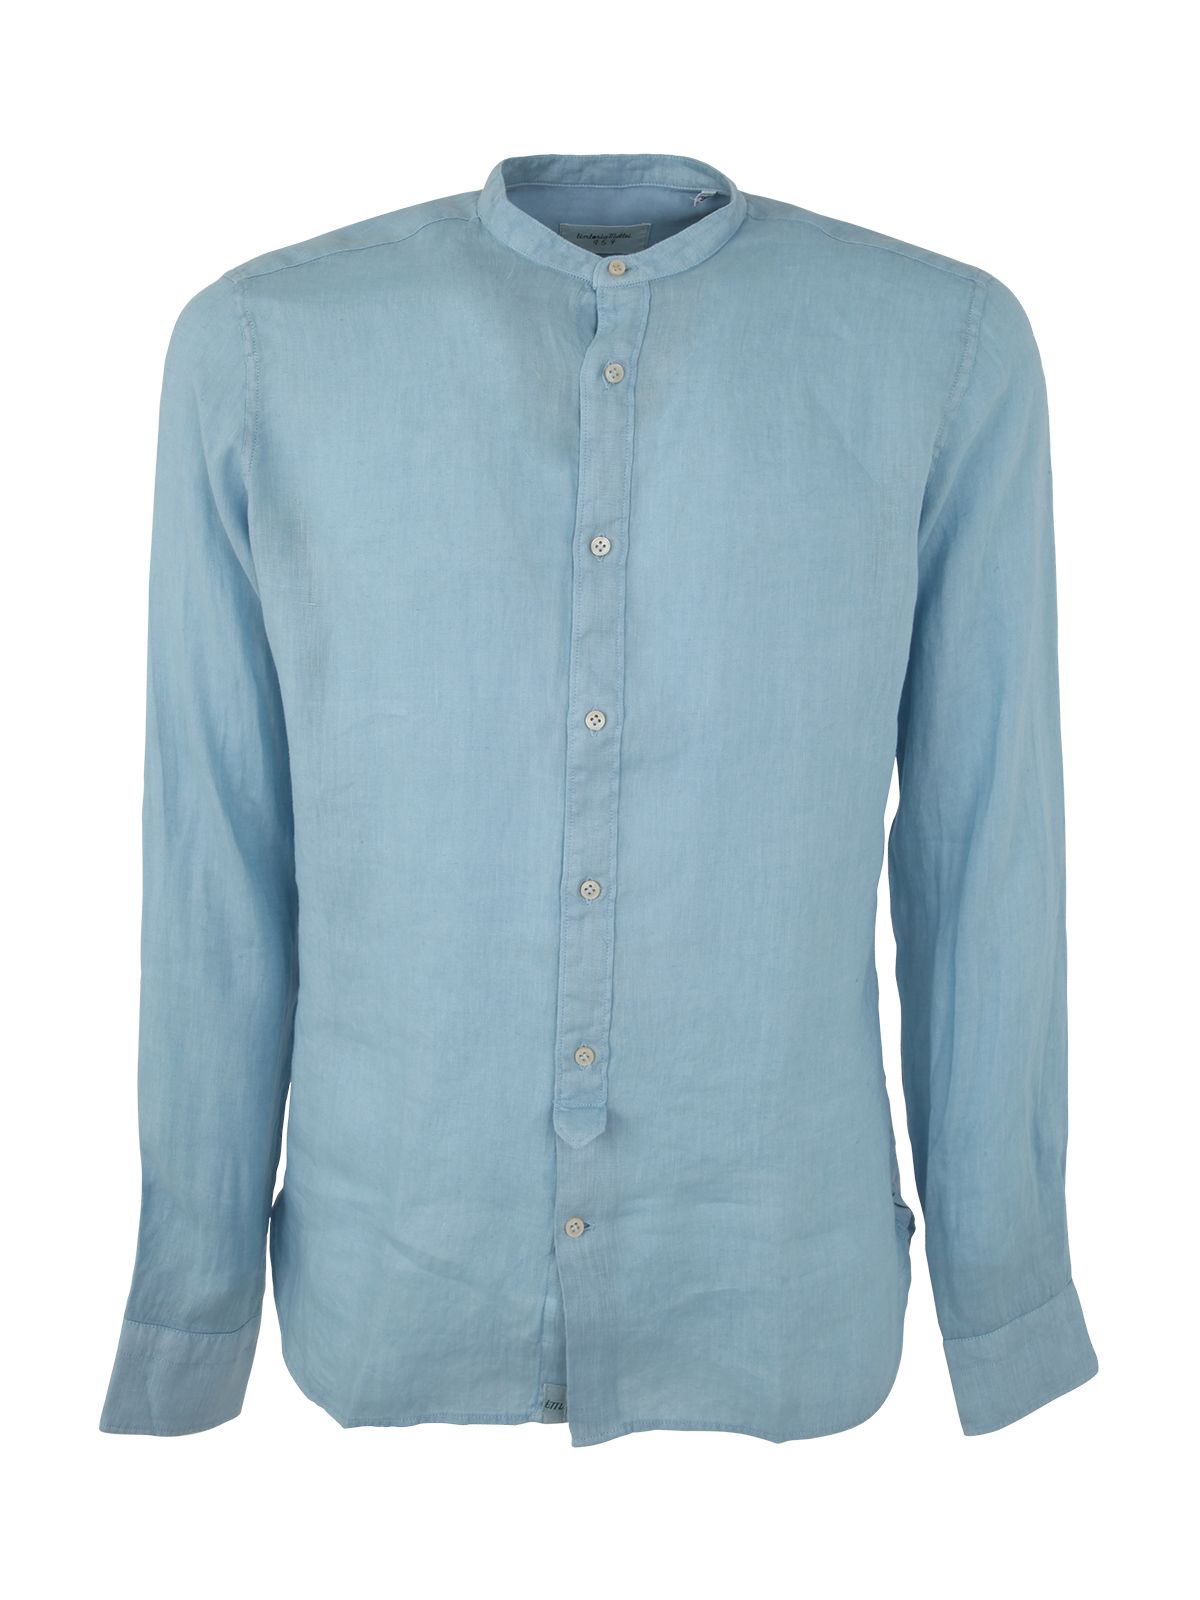 Shop Tintoria Mattei Men's Collar Shirt: Linen